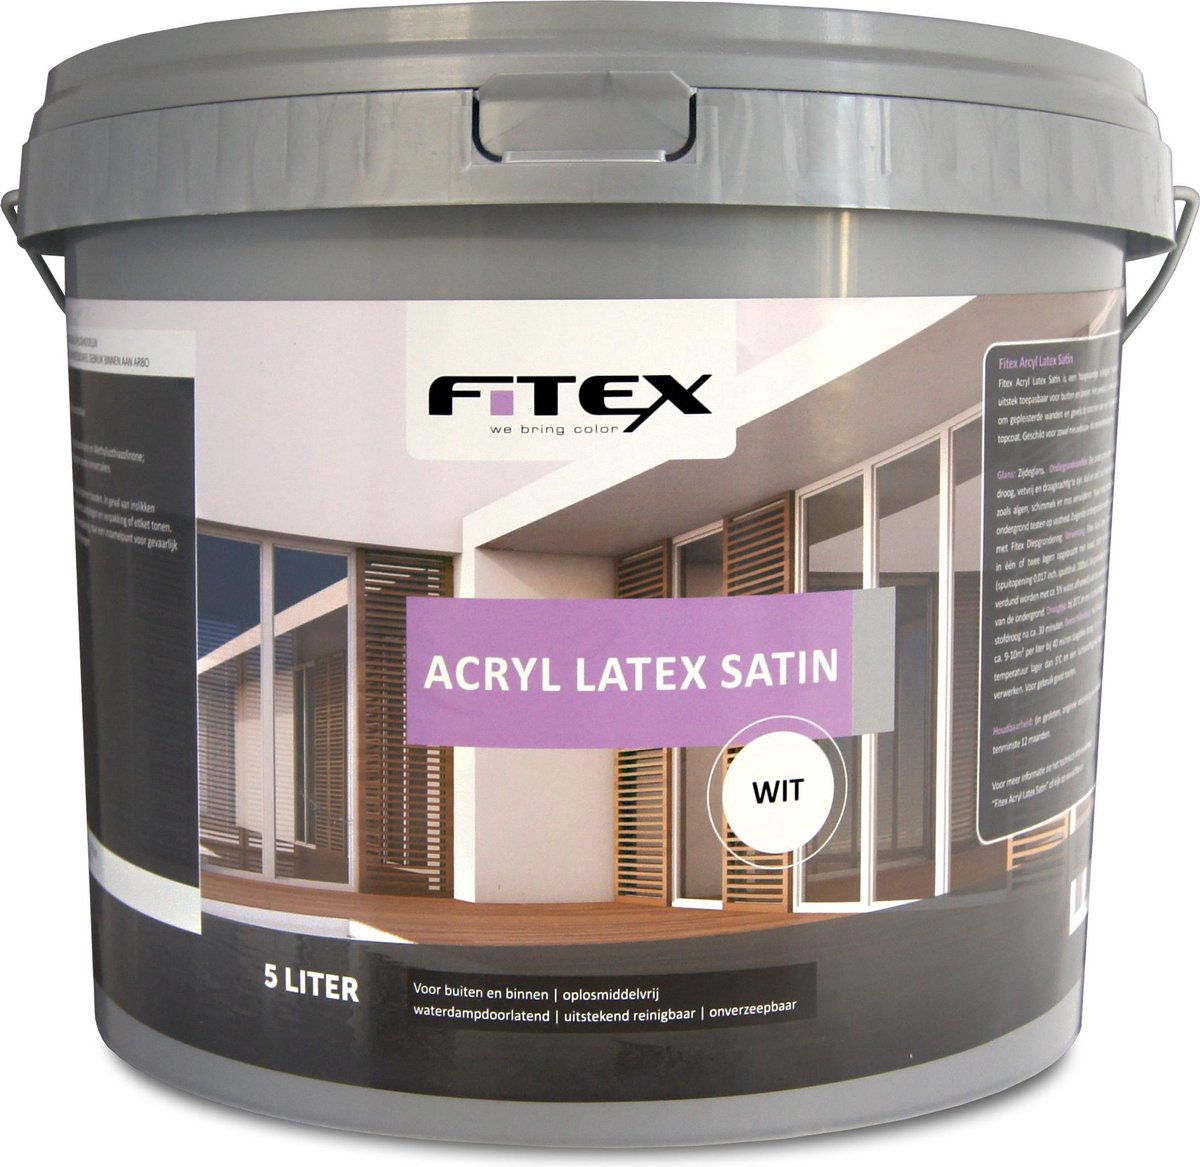 Fitex Acryl Latex Satin 5 liter wit | bol.com